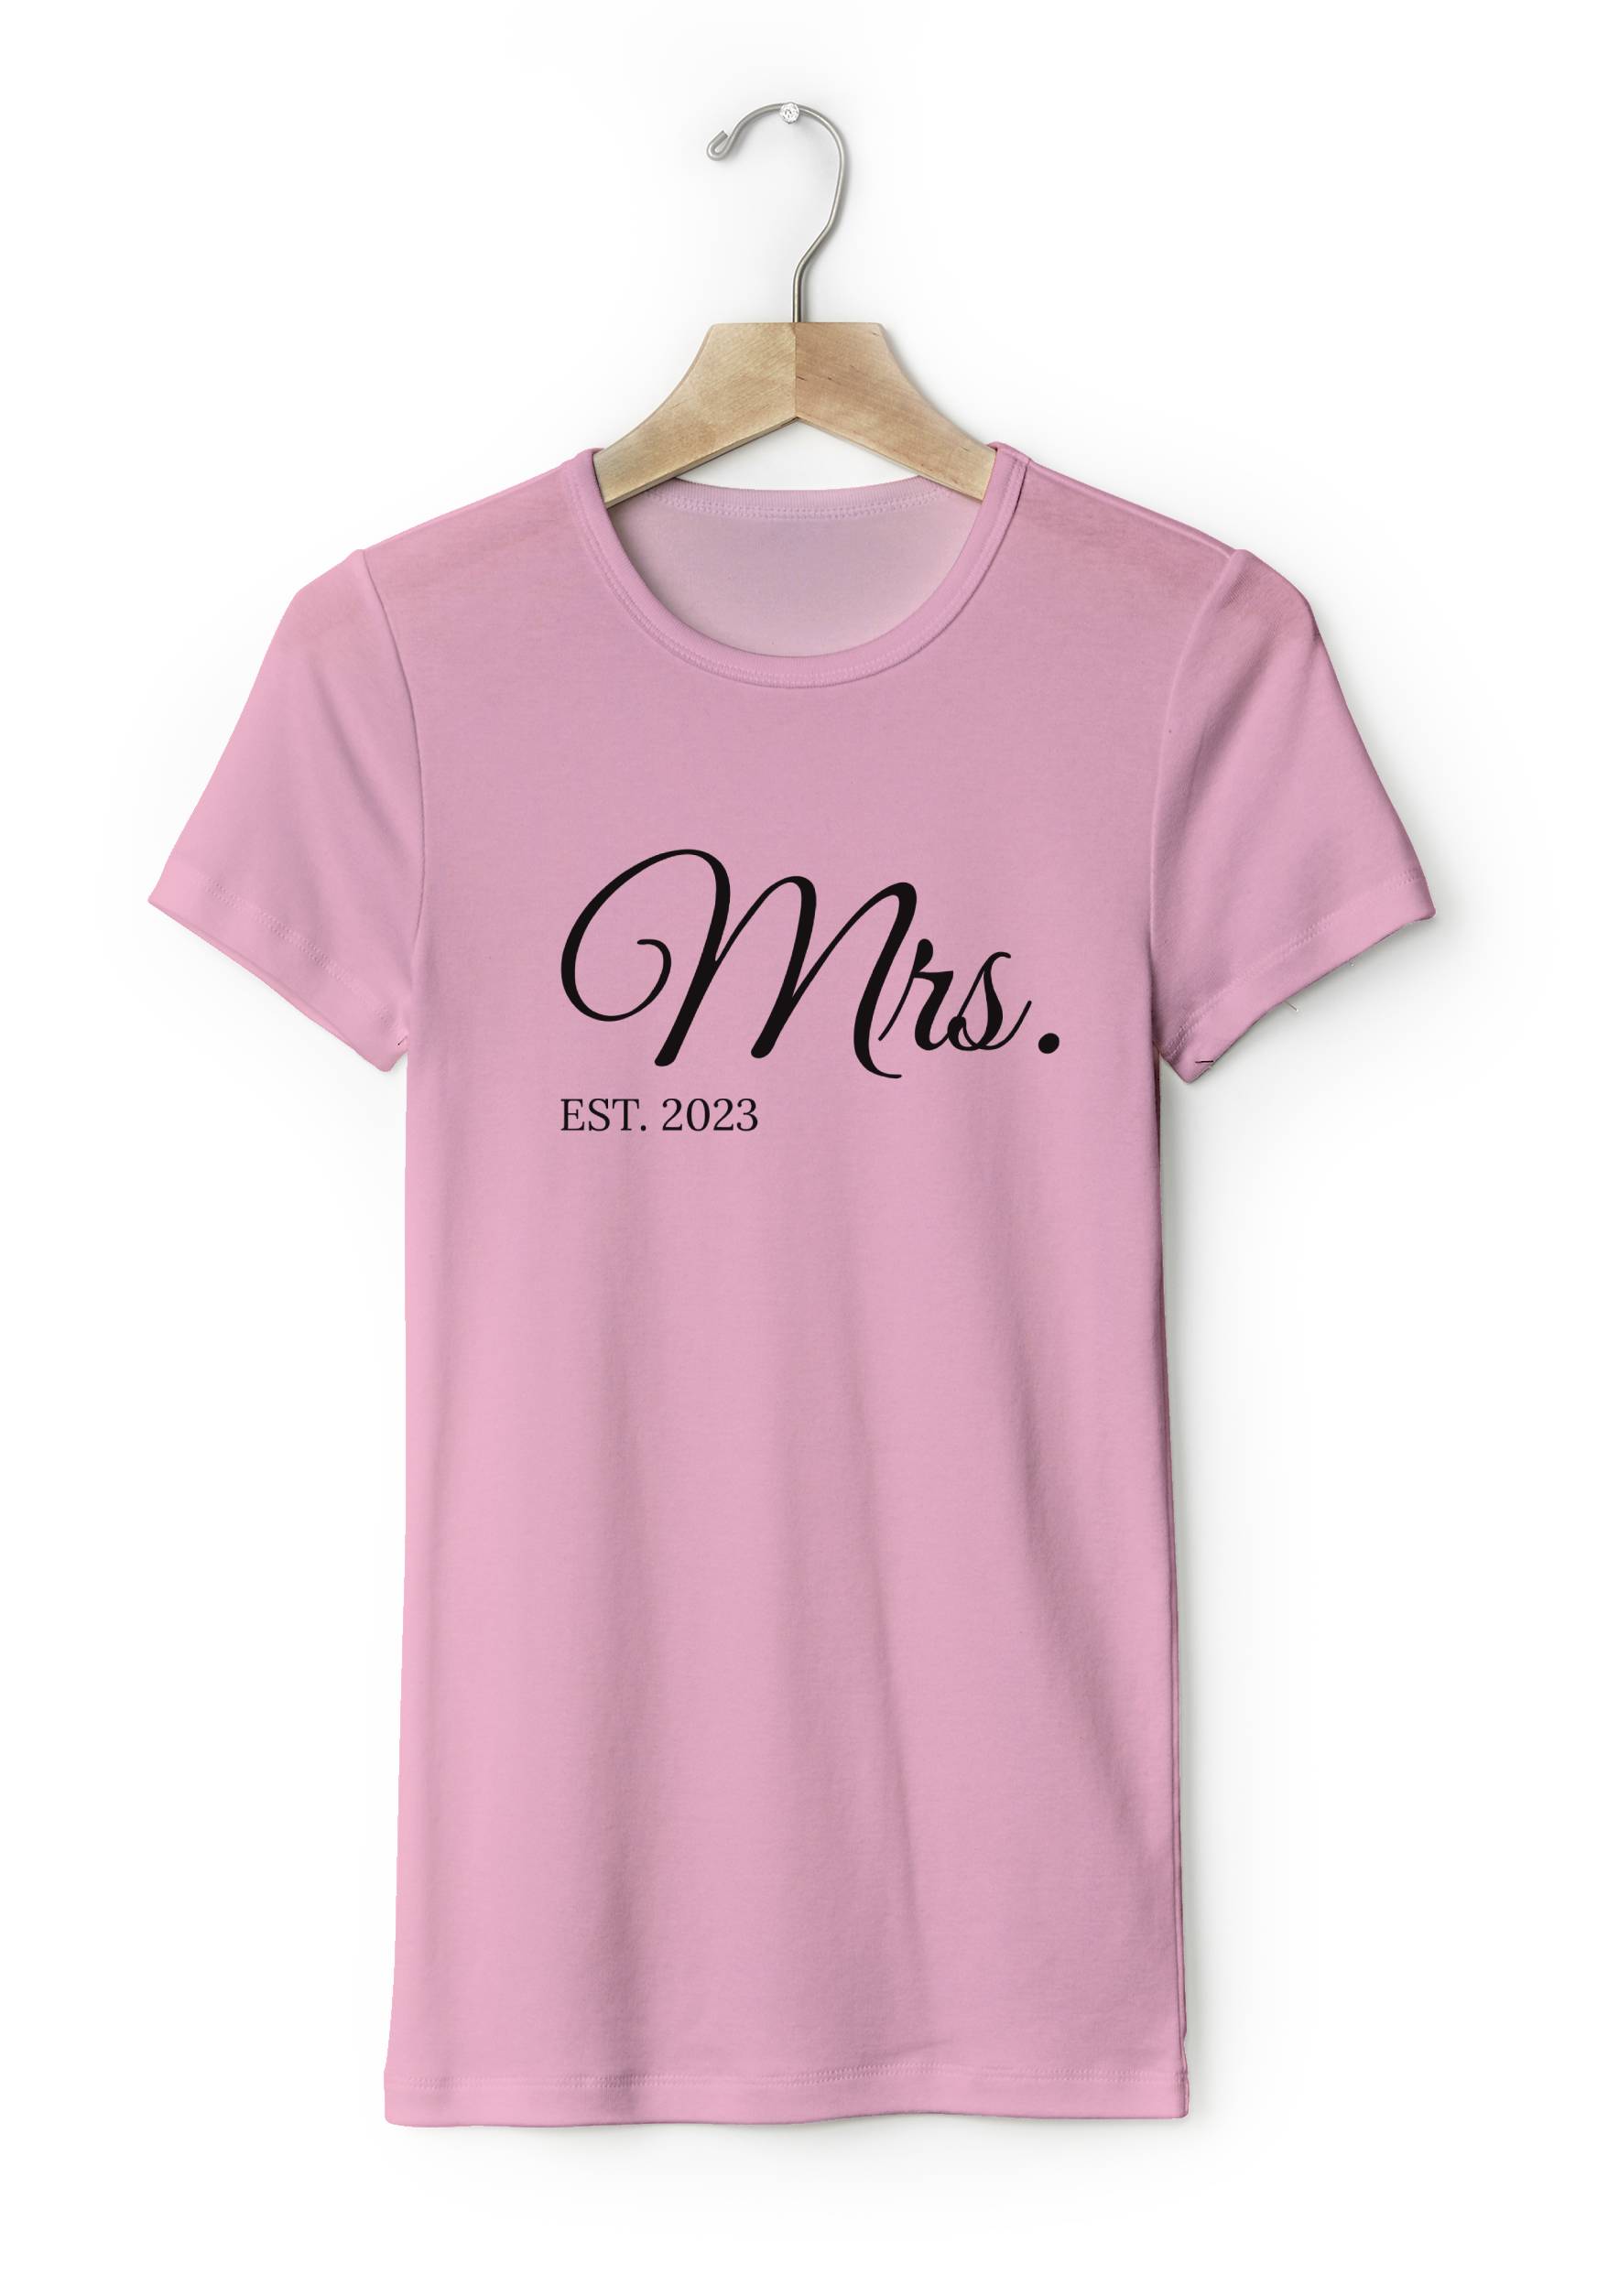 Personal Párové dámske tričko s vlastným textom - Mrs. EST. Farba: ružová, Veľkosť - dospelý: M